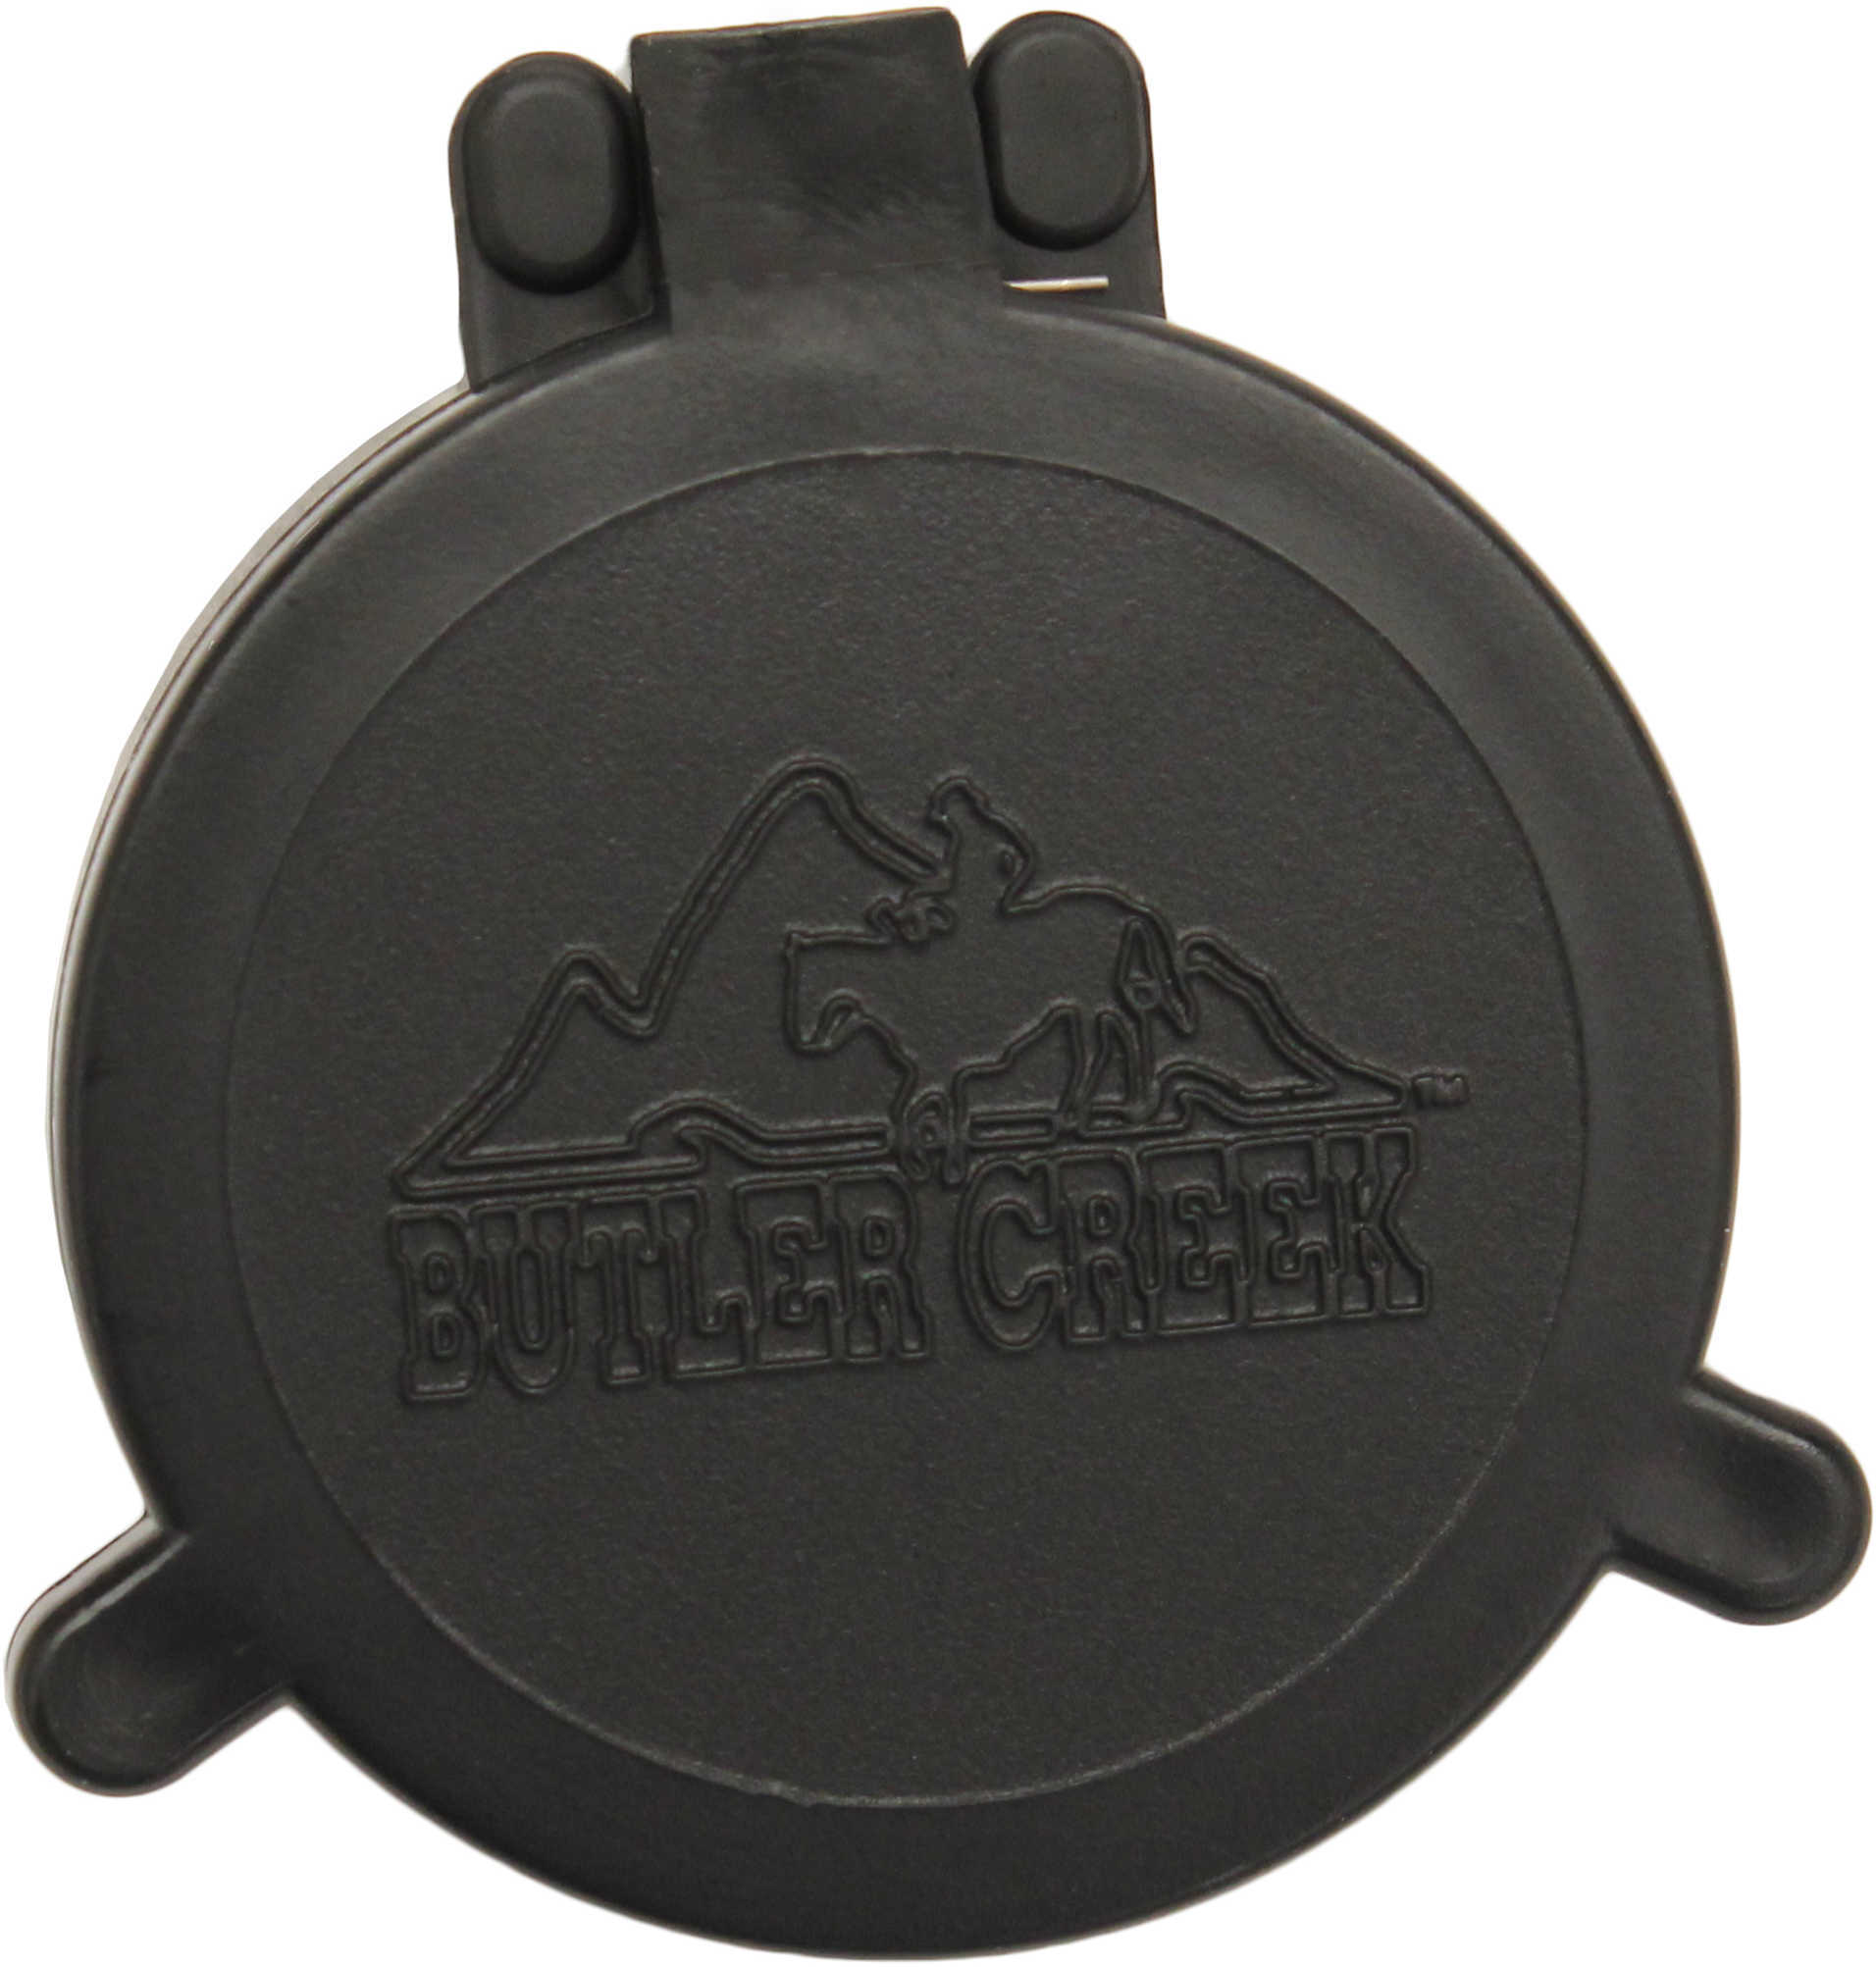 Butler Creek 30110 Flip-Open Scope Cover Objective Lens 39.10mm-34.00mm Slip On Polymer Black